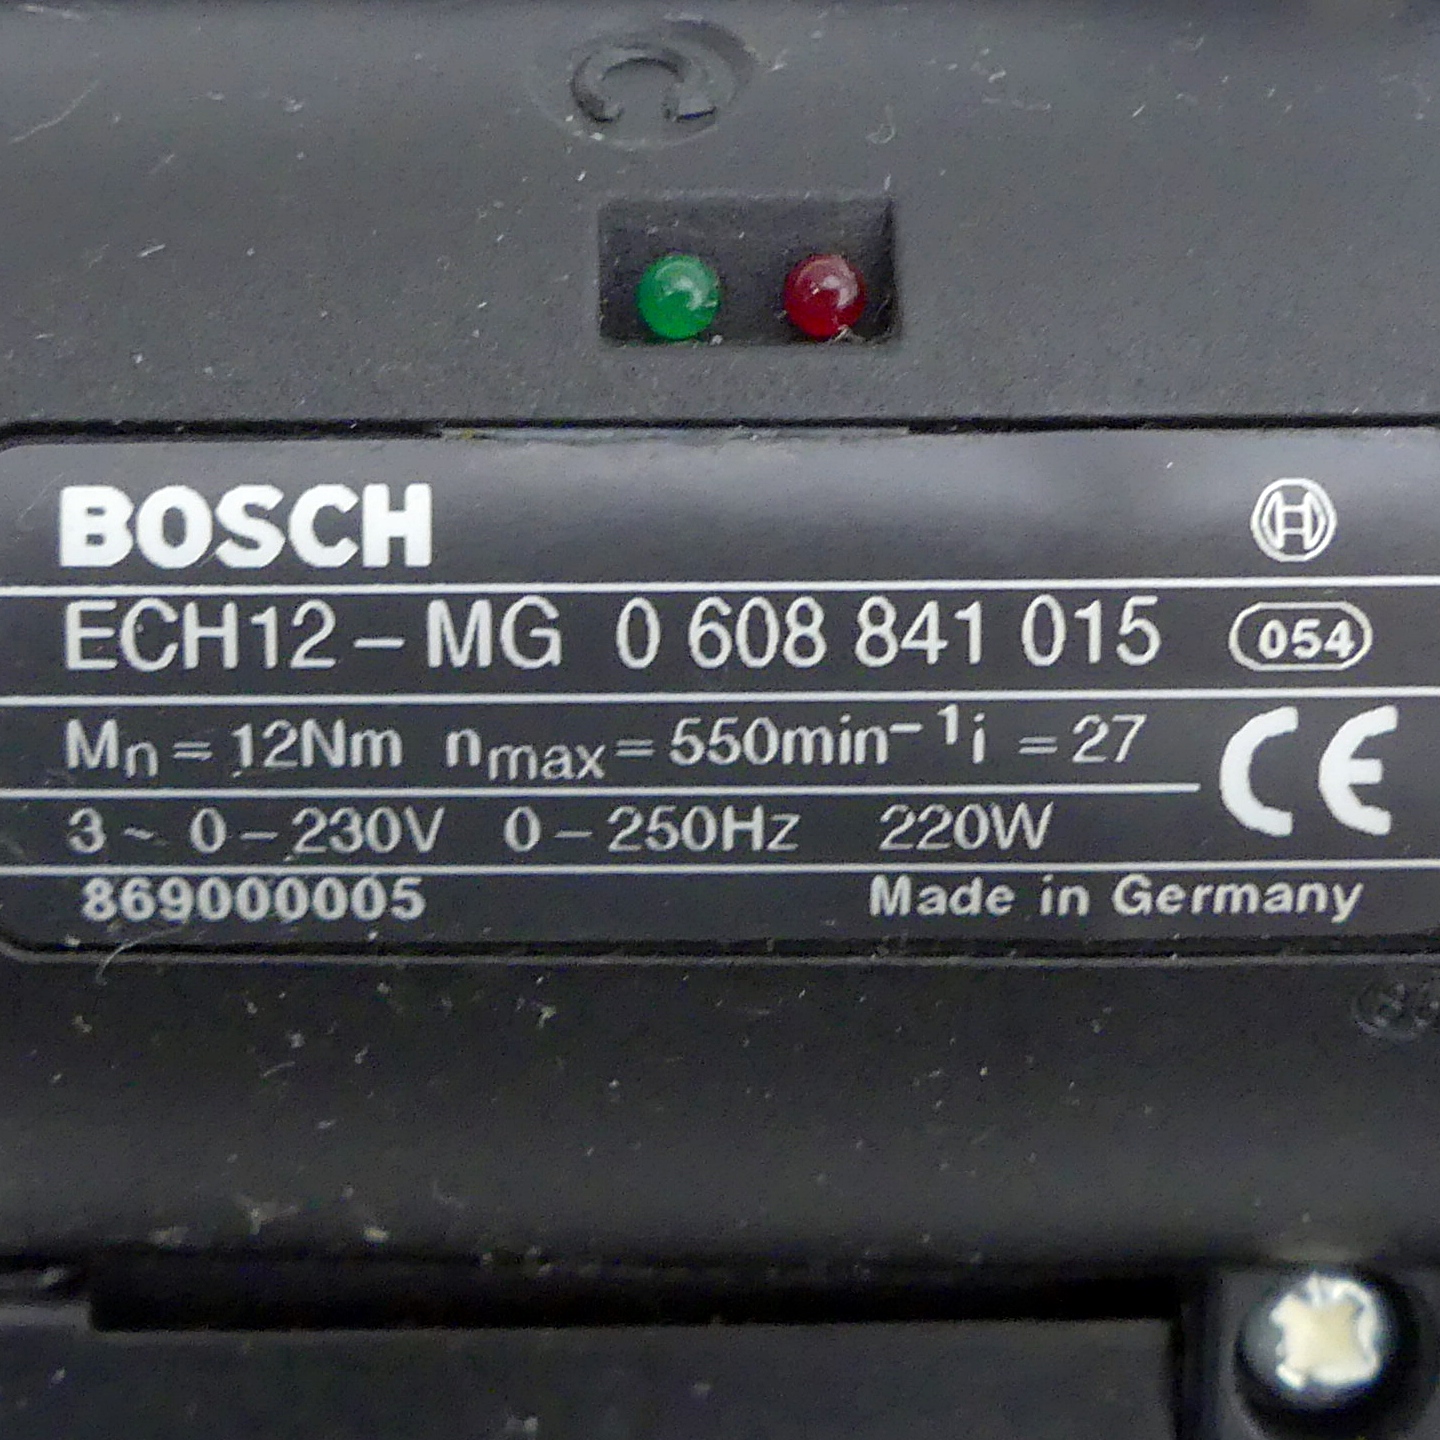 Handschrauber ECH12-MG 0 608 841 015 